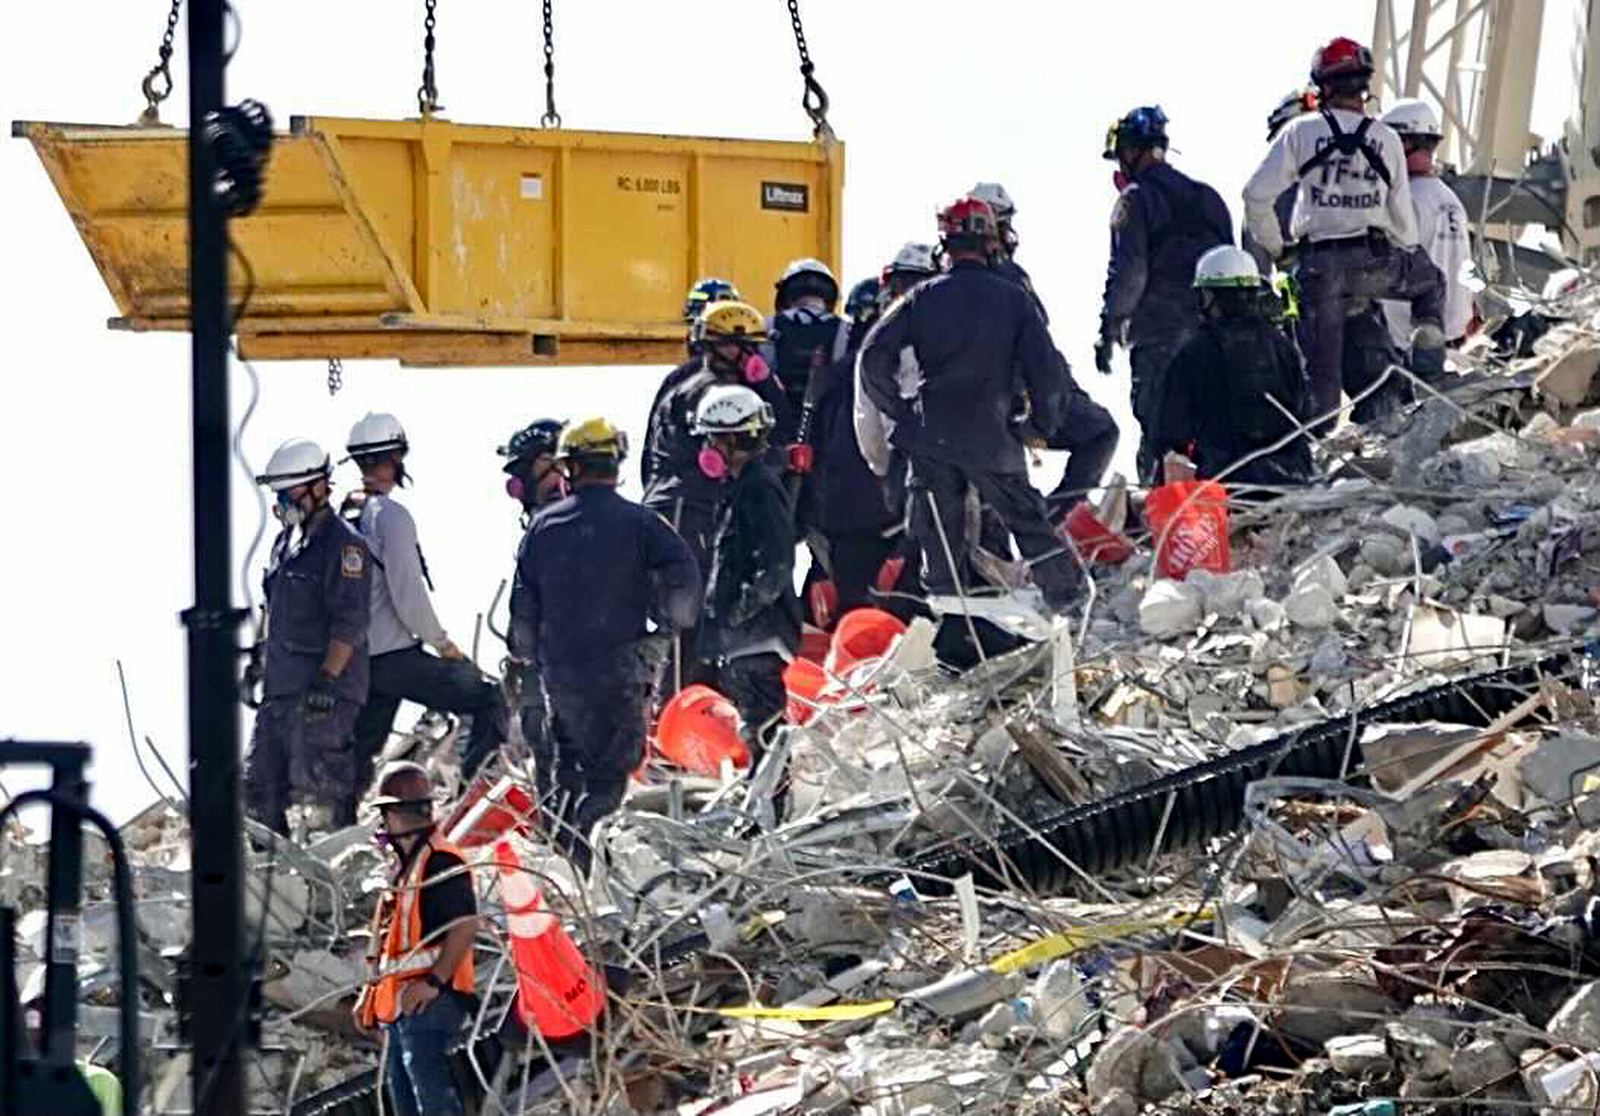 At least 20 missing as rescuers slog through mud, debris at giant Japan landslide